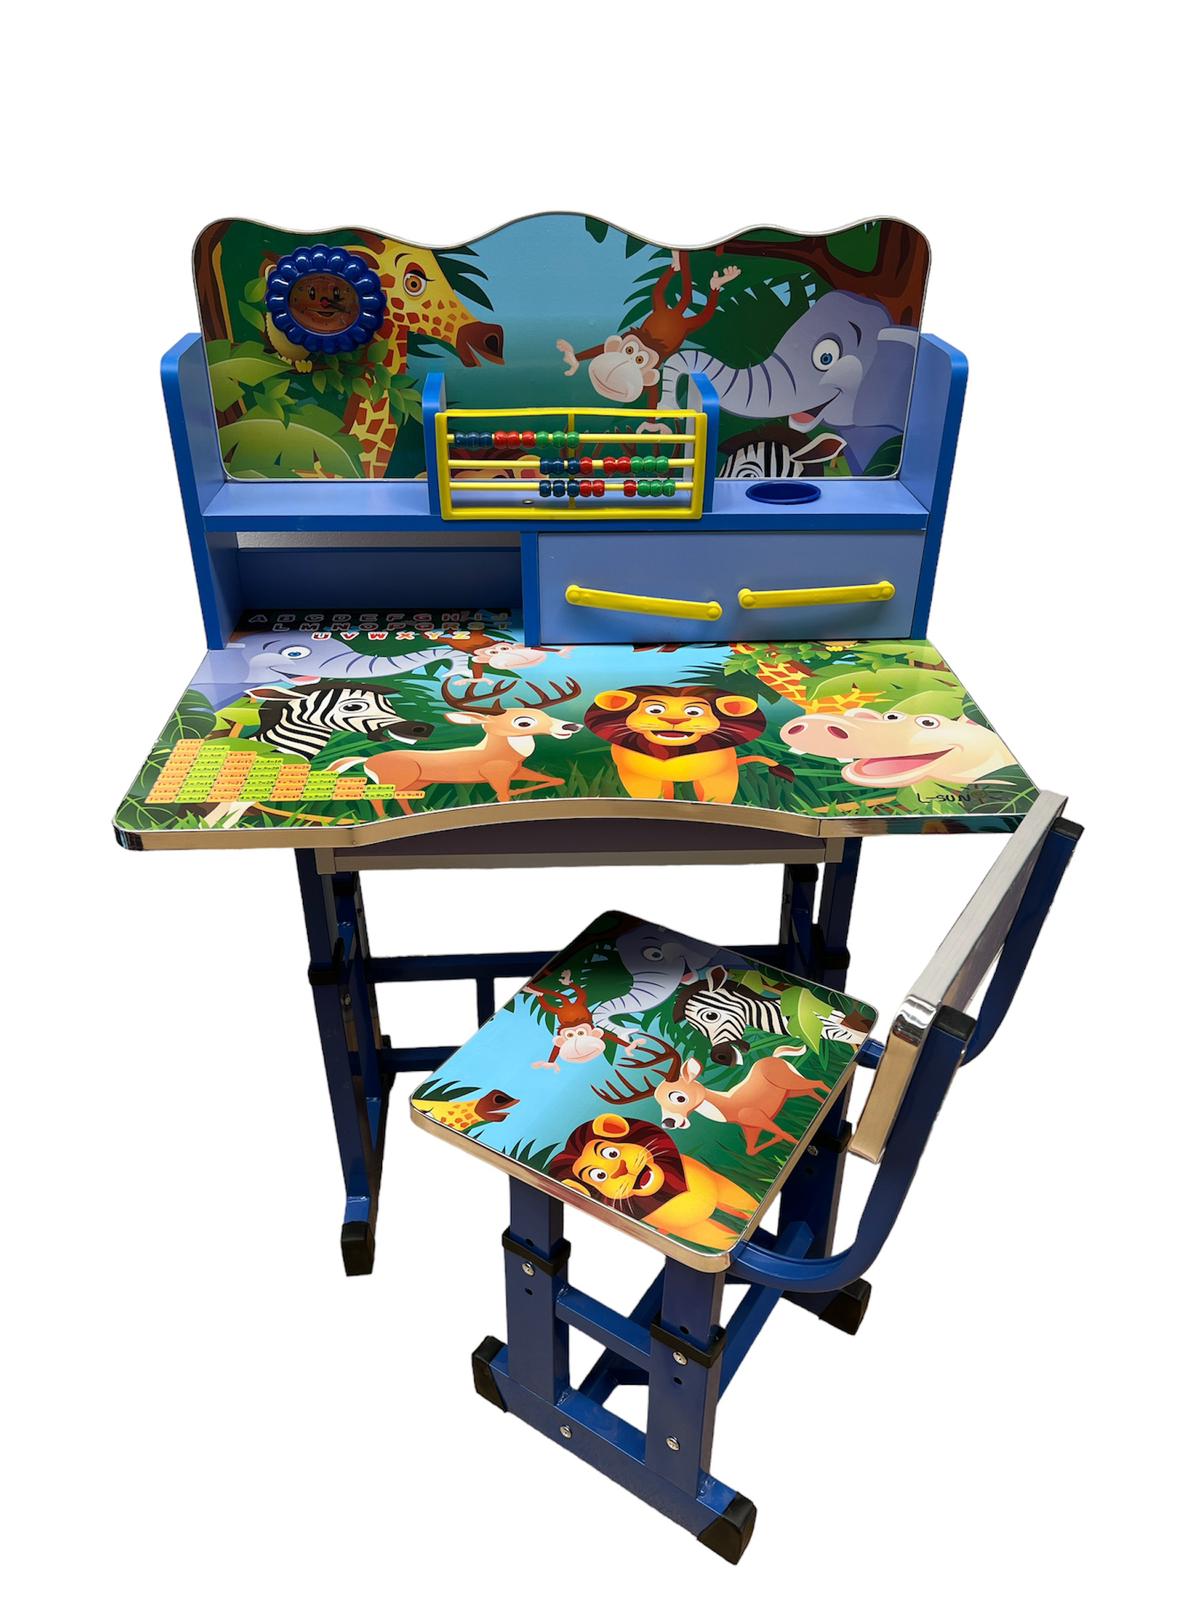 Birou mare cu scaun pentru copii, reglabile, cadru metalic si lemn, multicolor